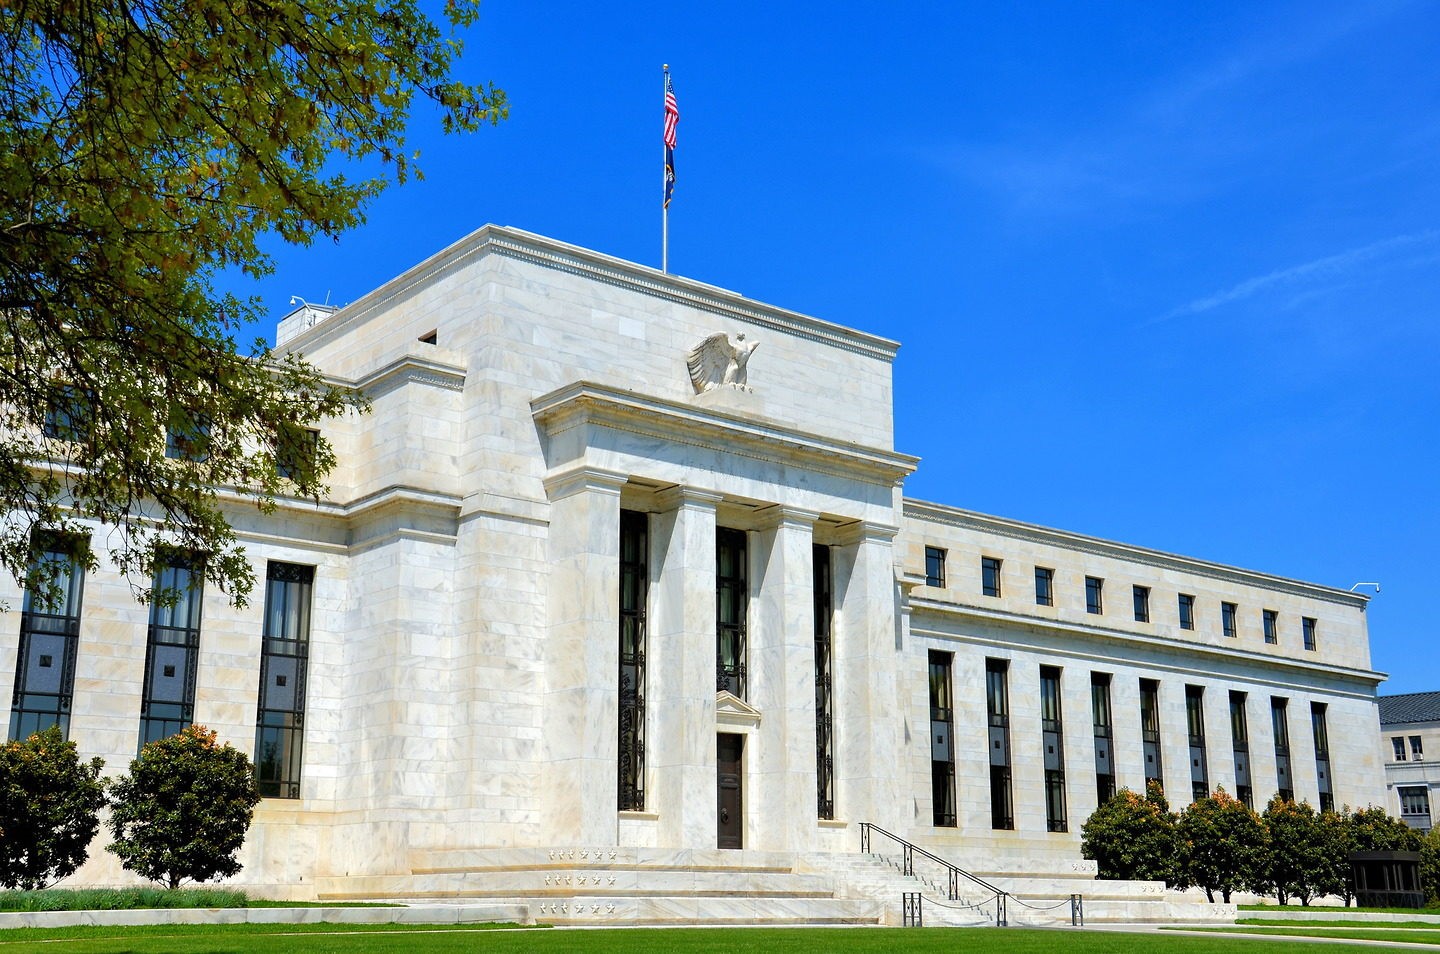 Trụ sở Ngân hàng Dự trữ Liên bang Mỹ (Fed) ở thủ đô Washington D.C. Ảnh: encirclephotos